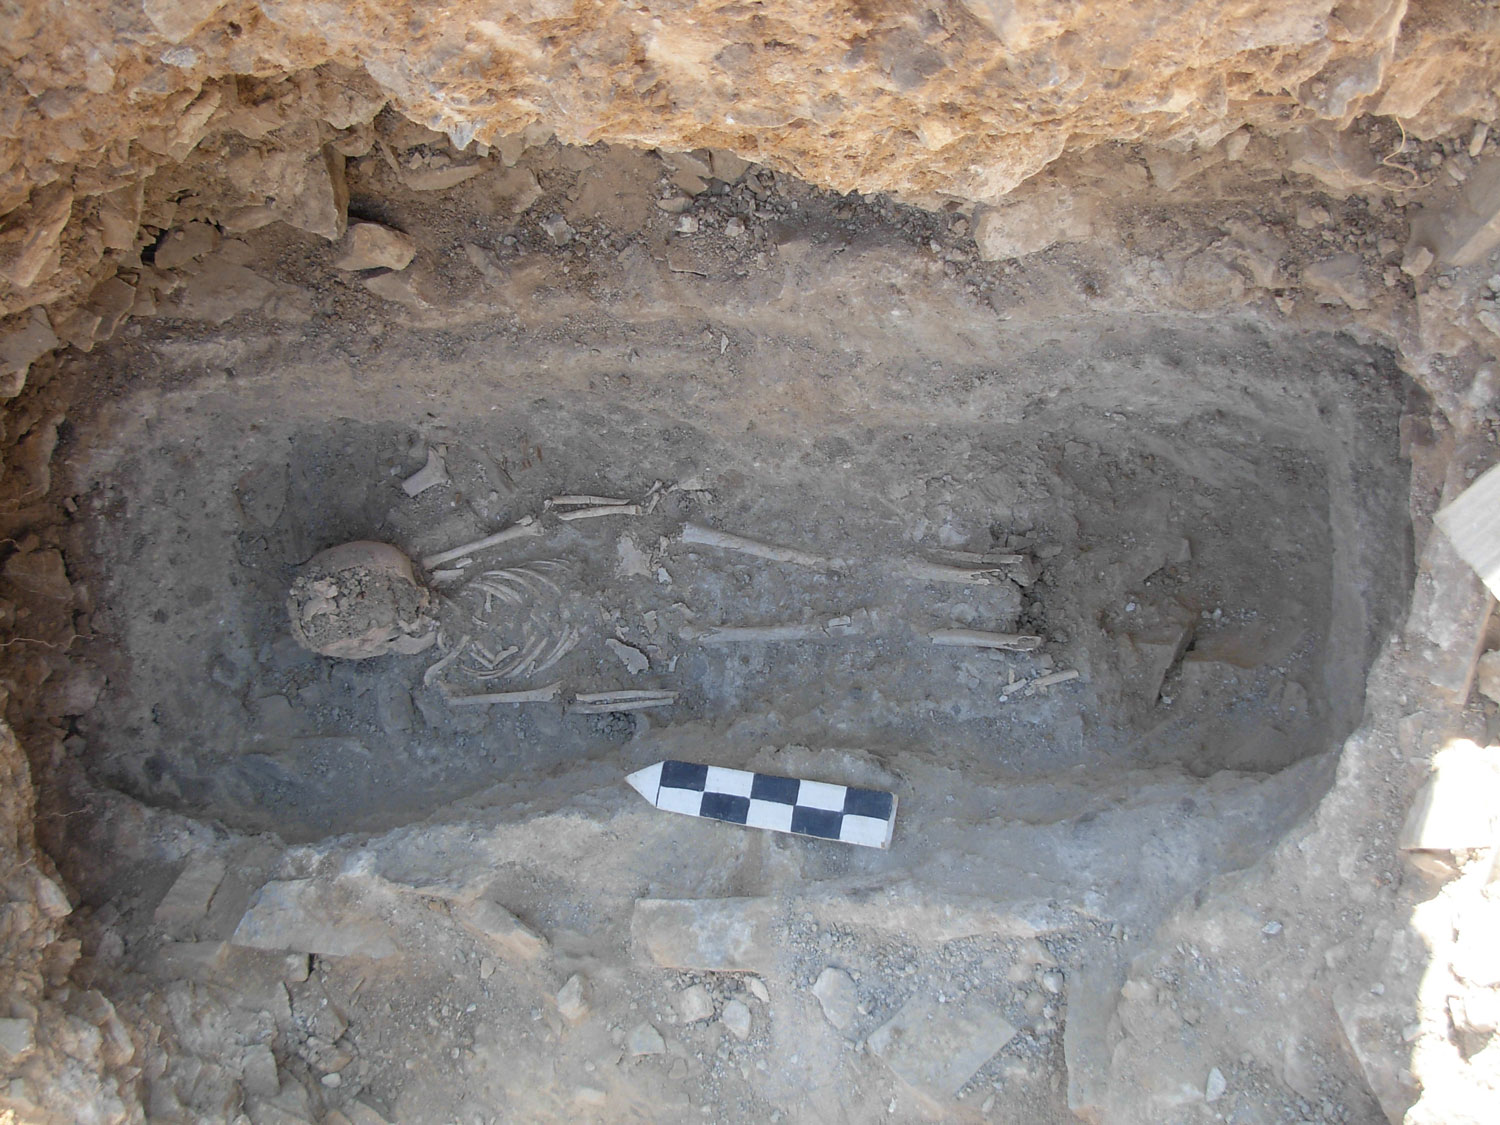 ανασκαφή από την Εφορεία Αρχαιοτήτων Κυκλάδων στο "Σταυρό" στα Κακάπετρα της Παροικιάς στην Πάρο